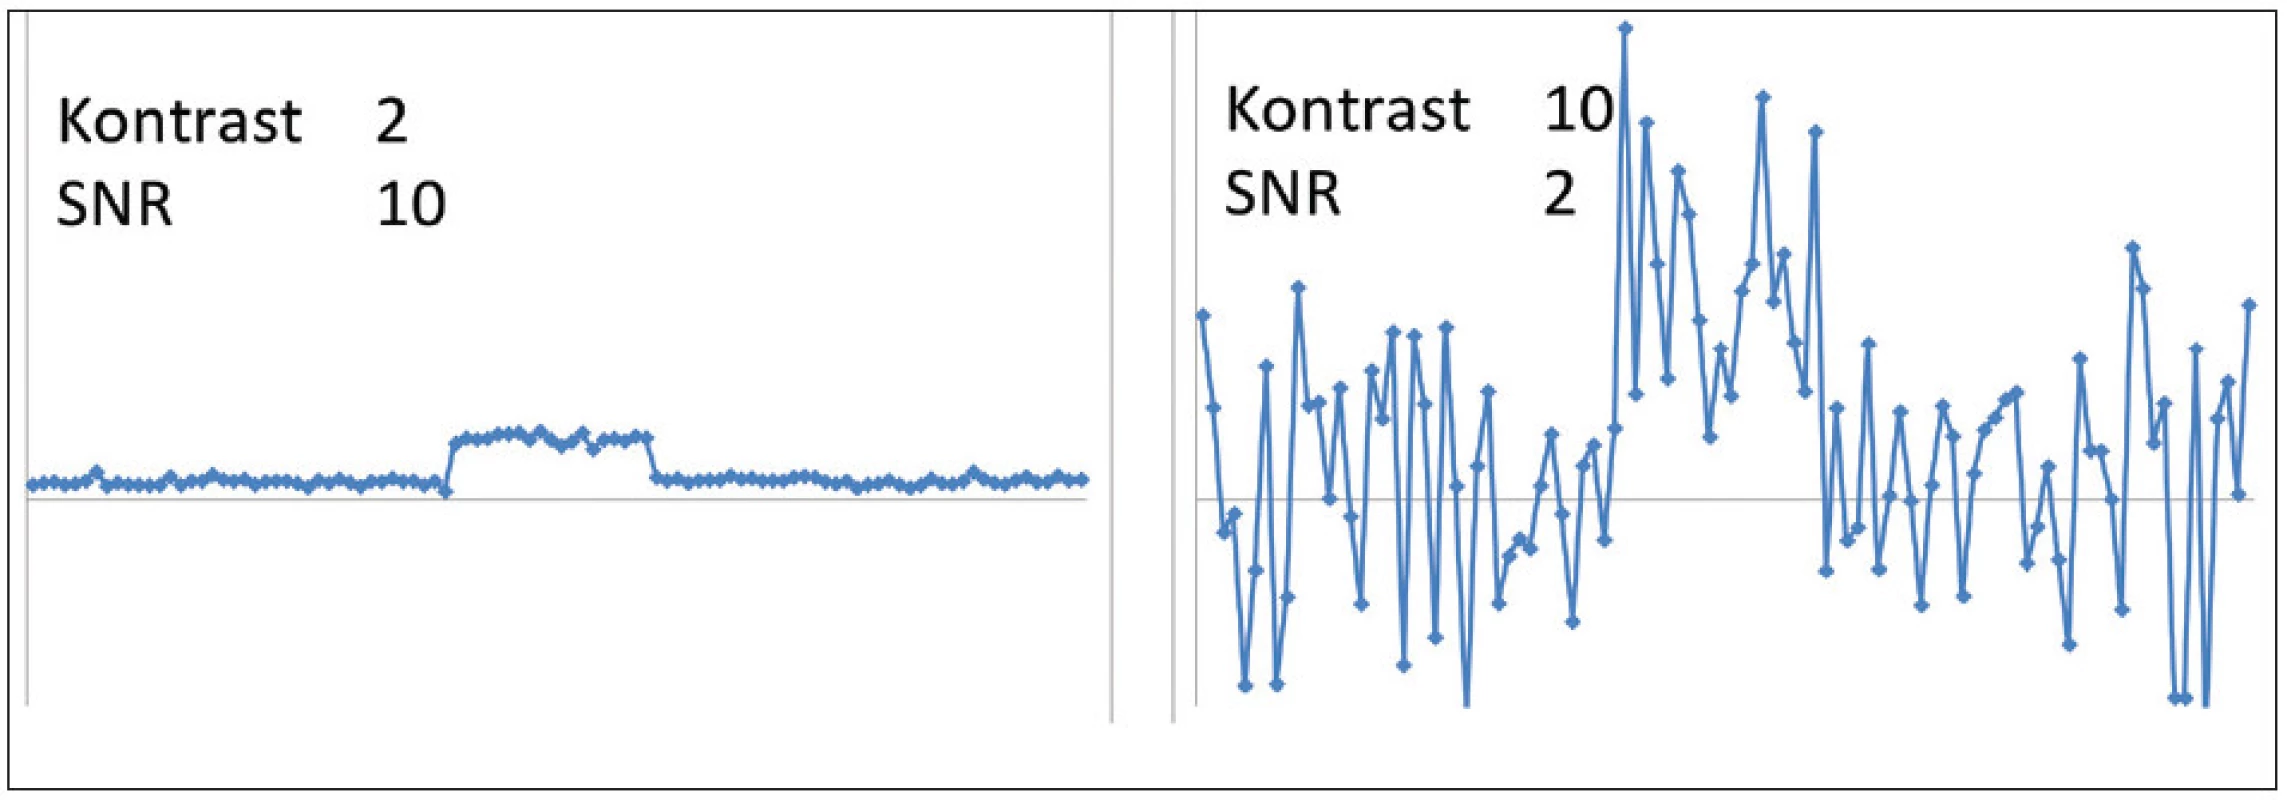 Ilustrace kvality zobrazení pro vysoký SNR a nízký kontrast (vlevo) a nízký SNR a vysoký kontrast (vpravo). Pro správnou detekci léze je nutné, aby obě veličiny byly dostatečně velké. Vzájemný vztah kontrastu a prostorového rozlišení byl v tomto příkladu zanedbán.